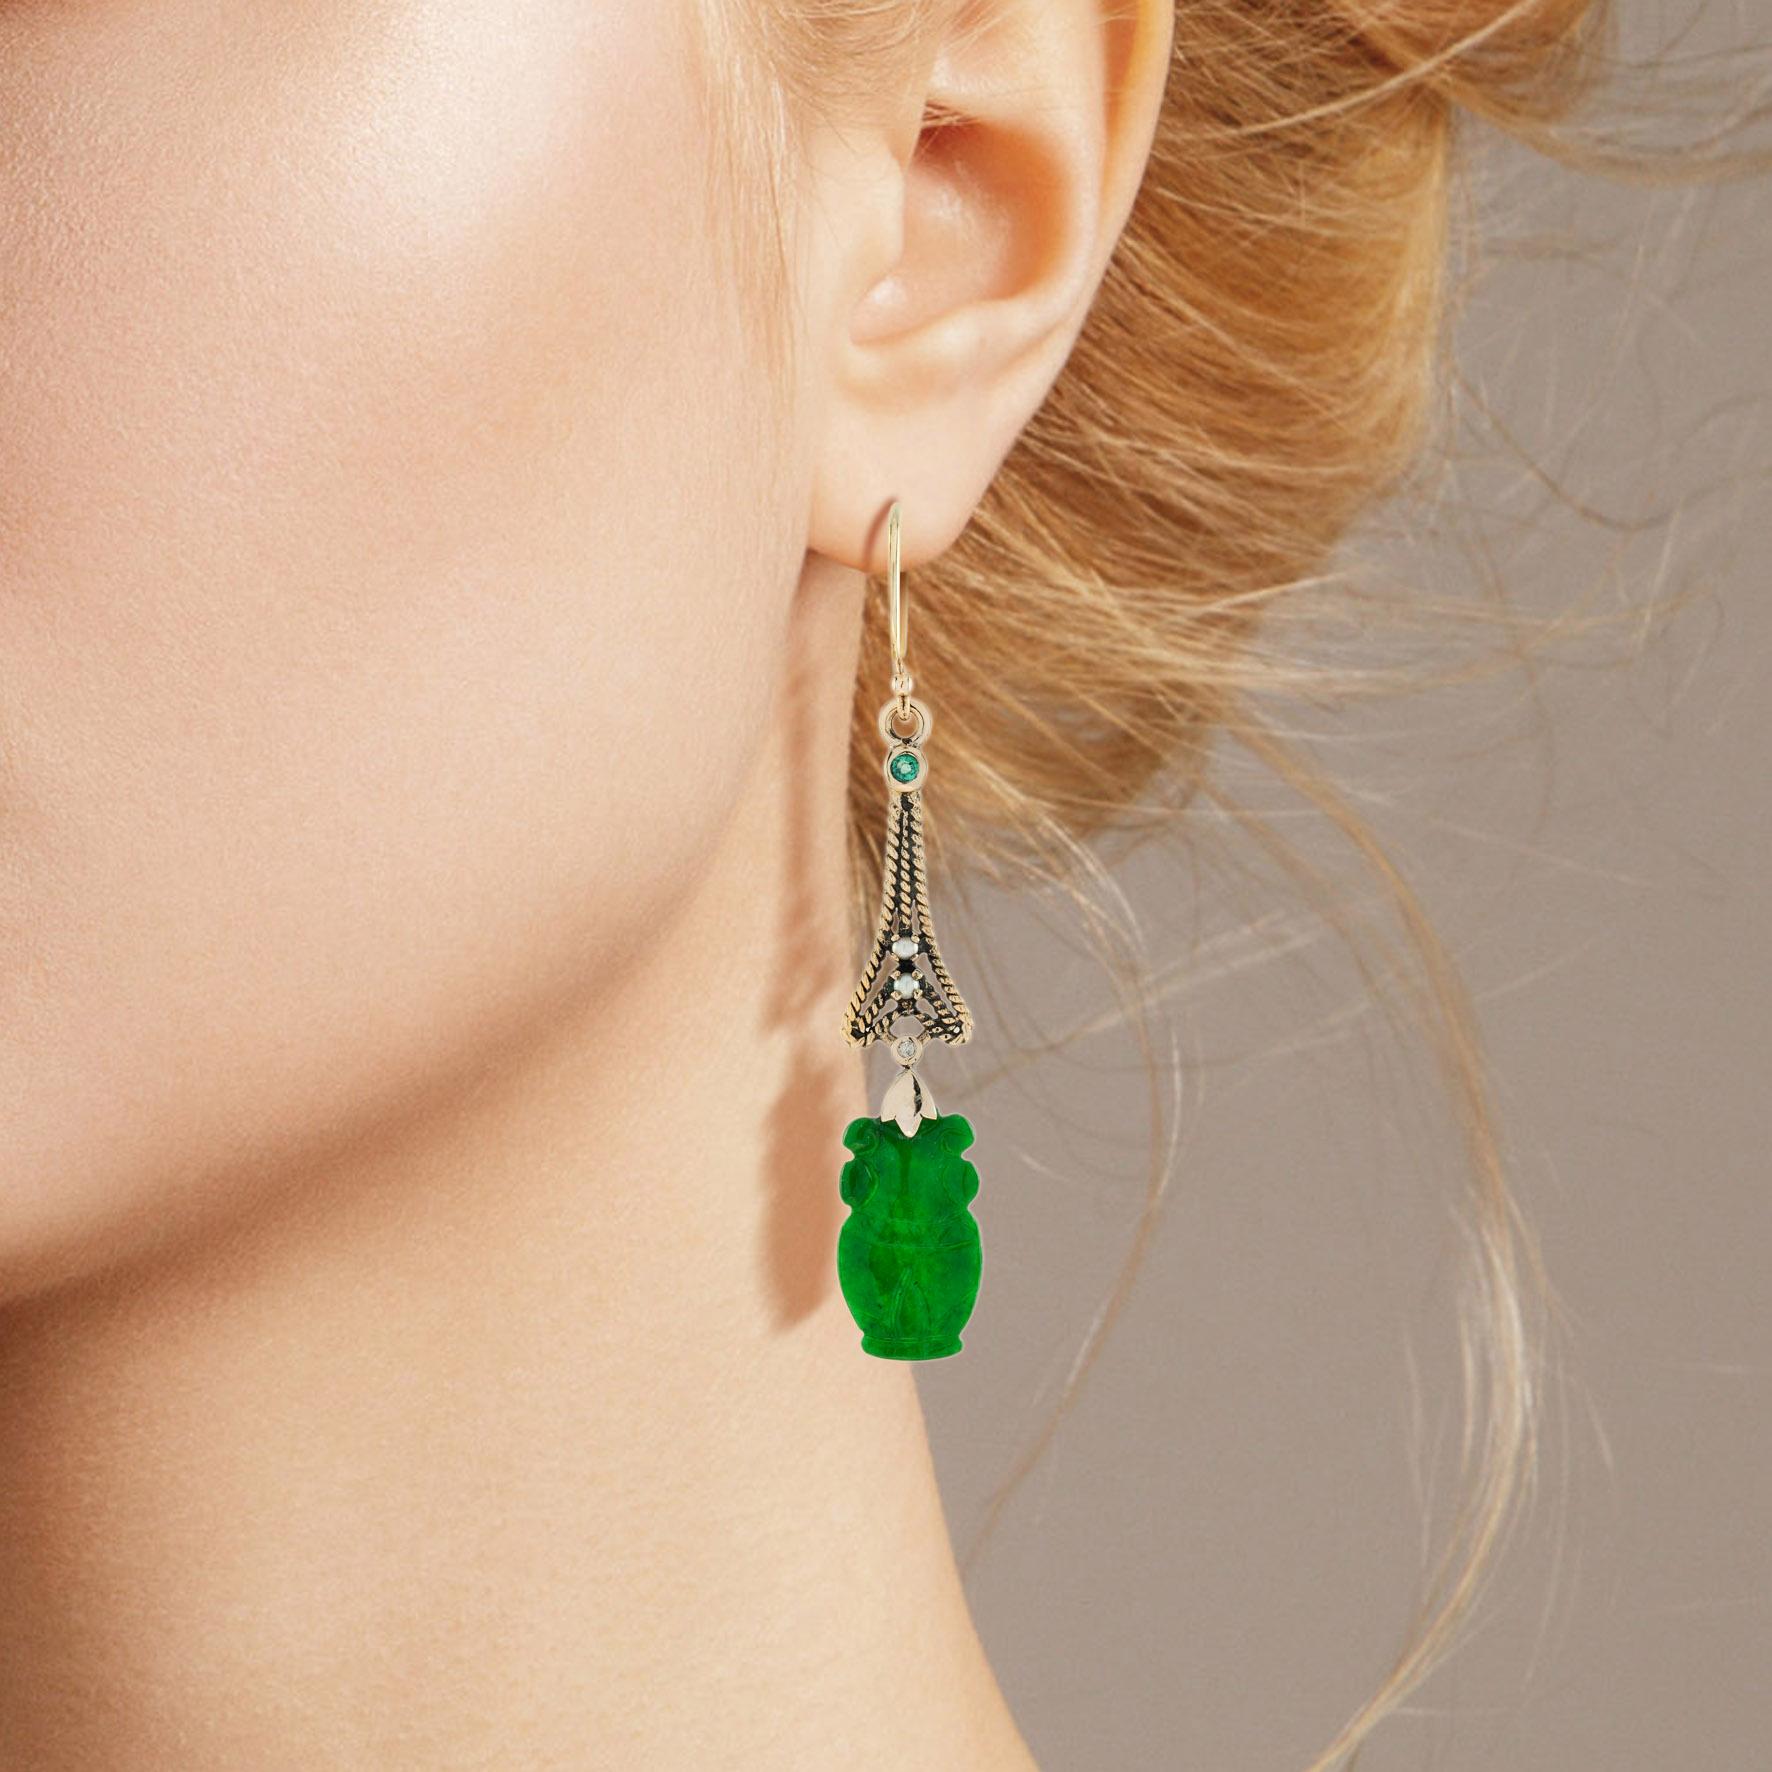 Le jade naturel de ces jolies boucles d'oreilles a une forme très particulière. Les deux pièces ont une couleur verte intense et sont bien sculptées en forme de vase. Le jade est suspendu dans une monture en or jaune 9k avec un lien géométrique en